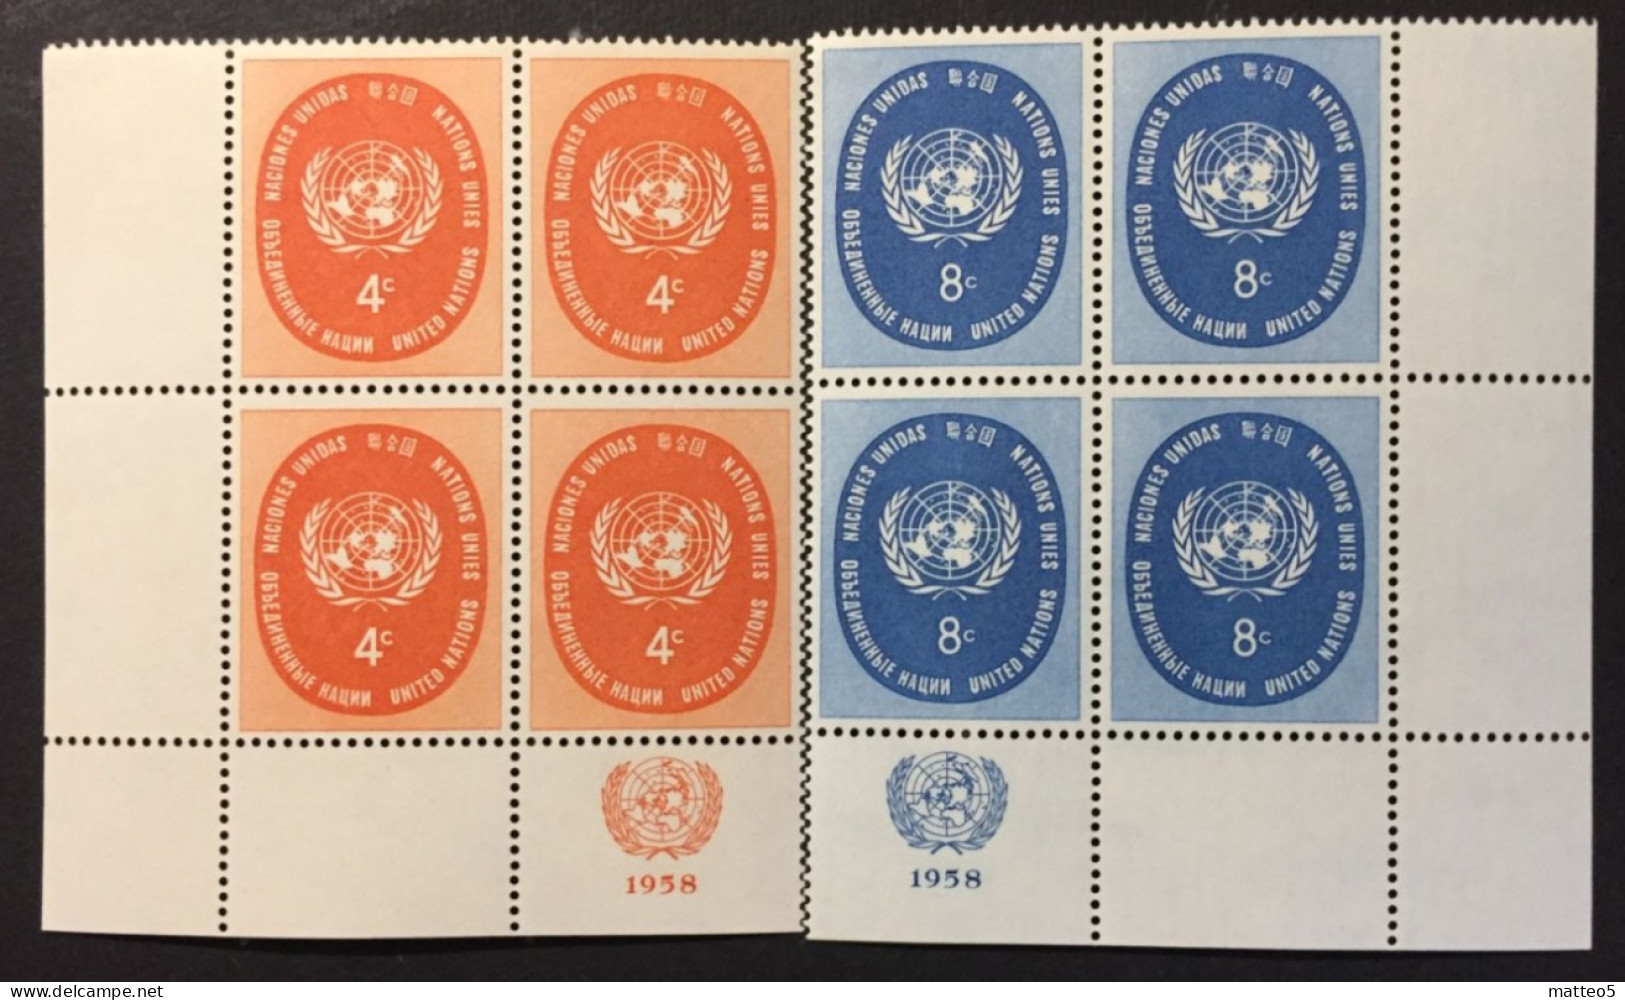 1958 - United Nations UNO UN ONU - UN Symbol - 2 X4 Stamps Unused - Nuovi